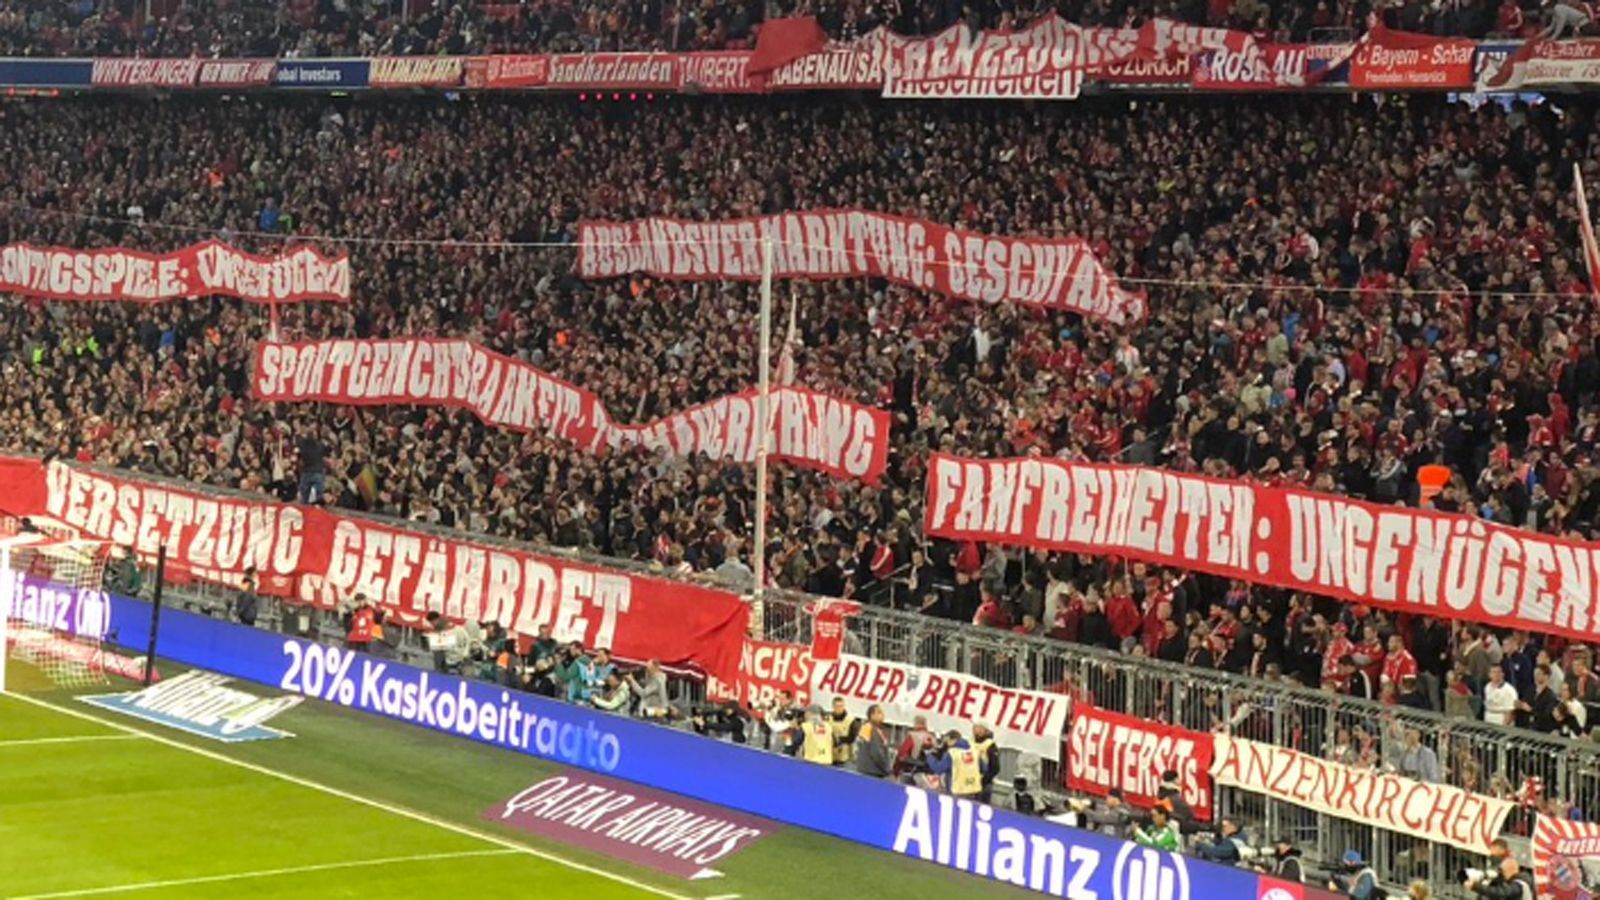 
                <strong>Fan-Protest in München</strong><br>
                Das von den Anhängern in der Südkurve der Allianz Arena ausgestellte Zeugnis endet mit dem vernichtenden Urteil: Versetzung gefährdet.
              